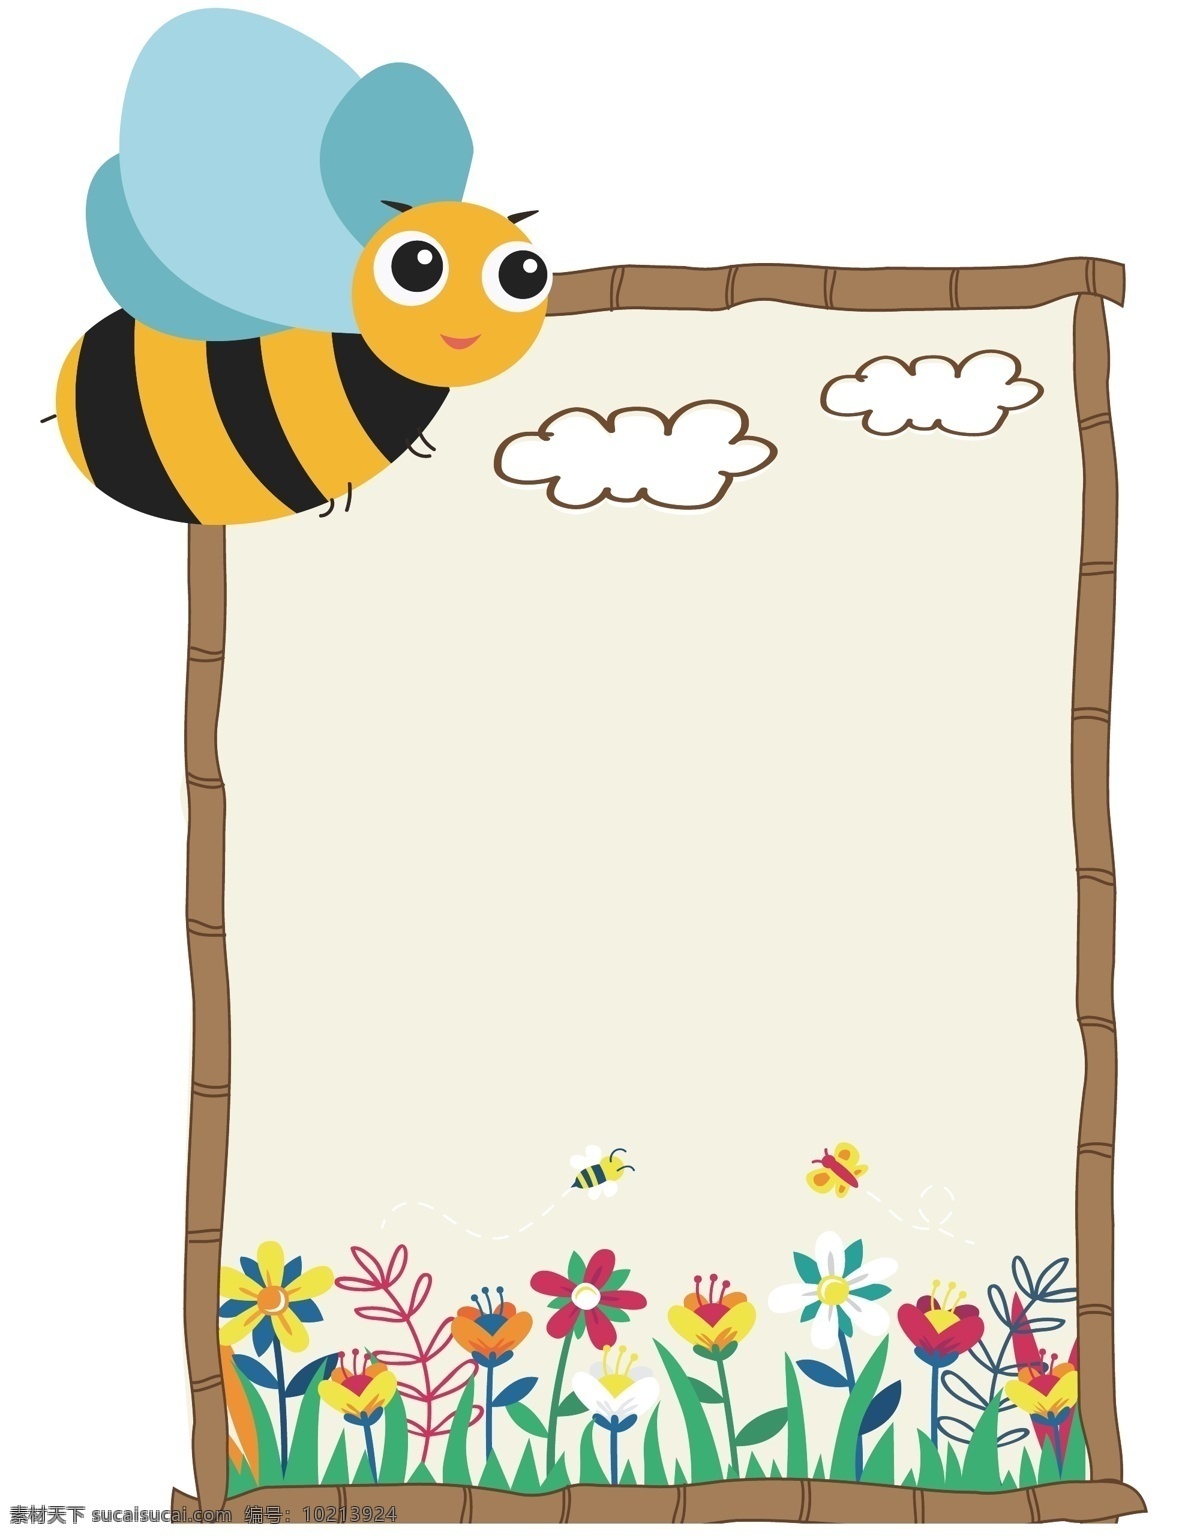 蜜蜂 采 蜜 对话框 可爱的蜜蜂 卡通插画 对话框插画 边框 框架 框子 背景框 蜜蜂采蜜